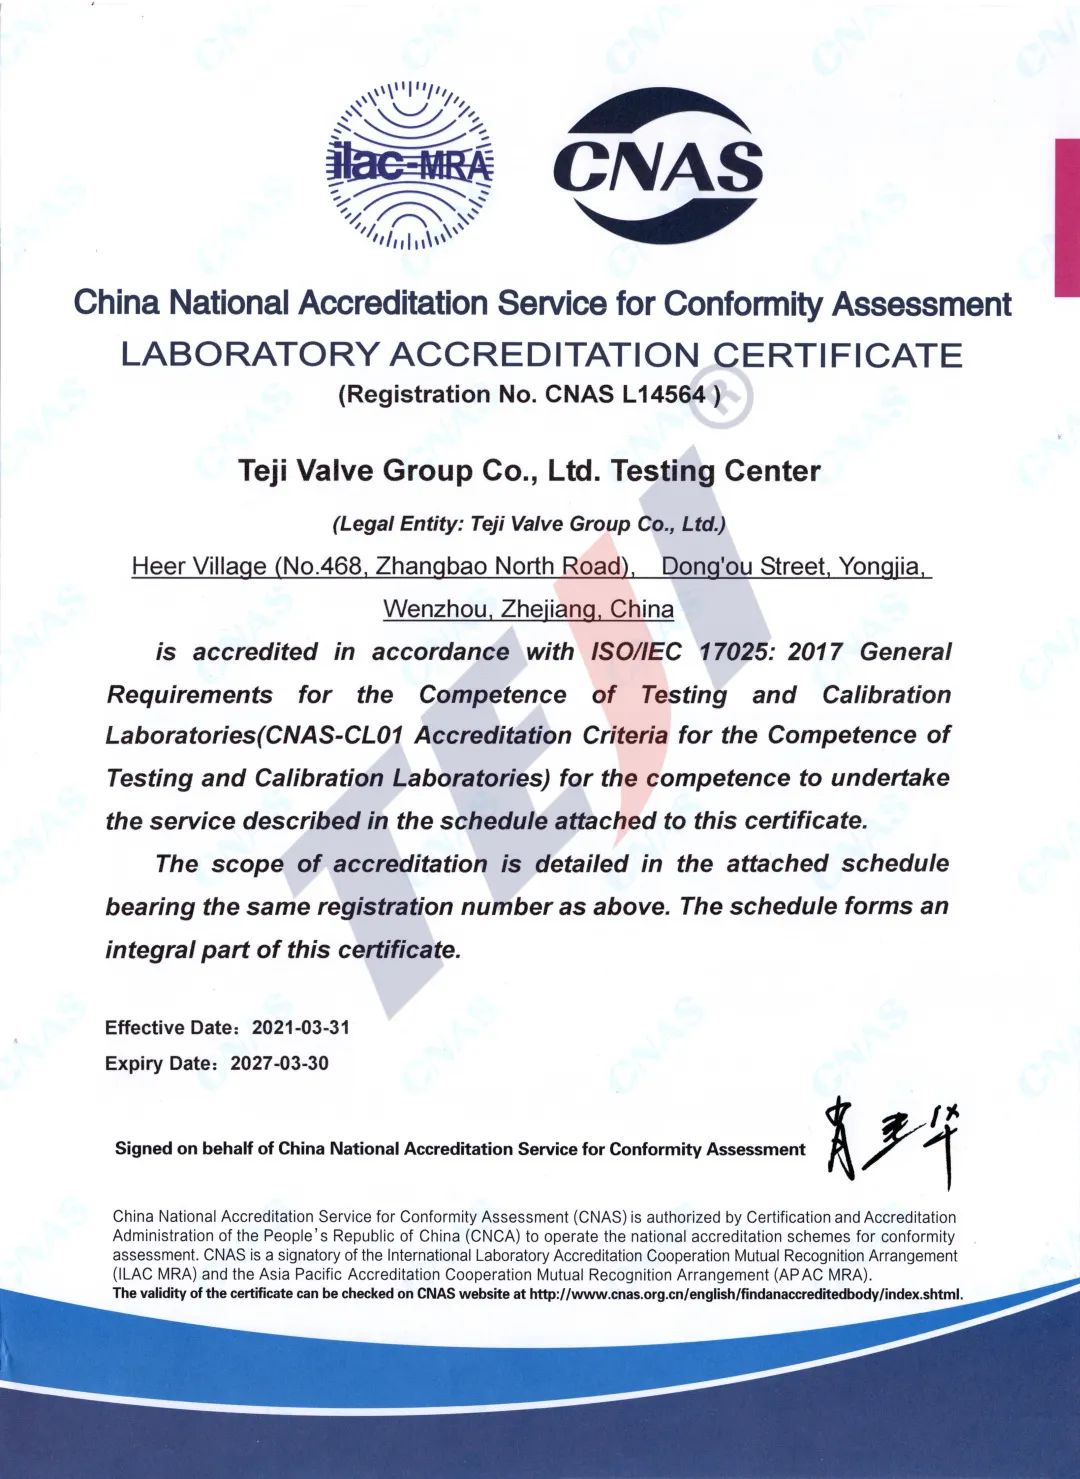 喜报！特技阀门集团有限公司荣获CNAS颁发的“国家实验室认可证书”